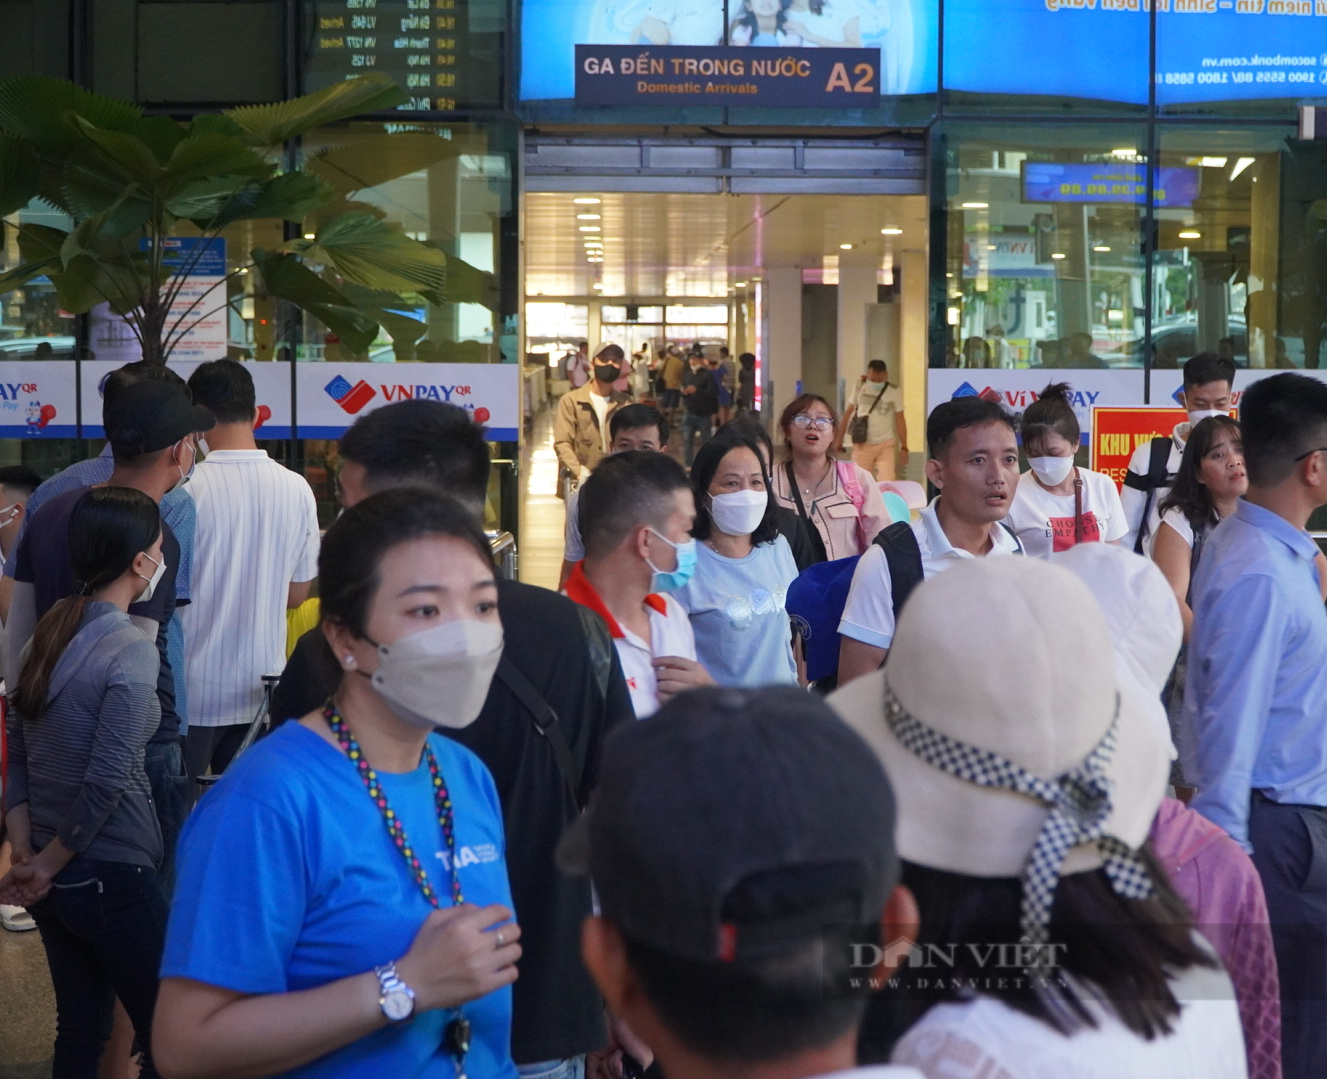 Lượng khách đến sân bay Tân Sơn Nhất tăng vọt trong ngày cuối nghỉ lễ - Ảnh 1.